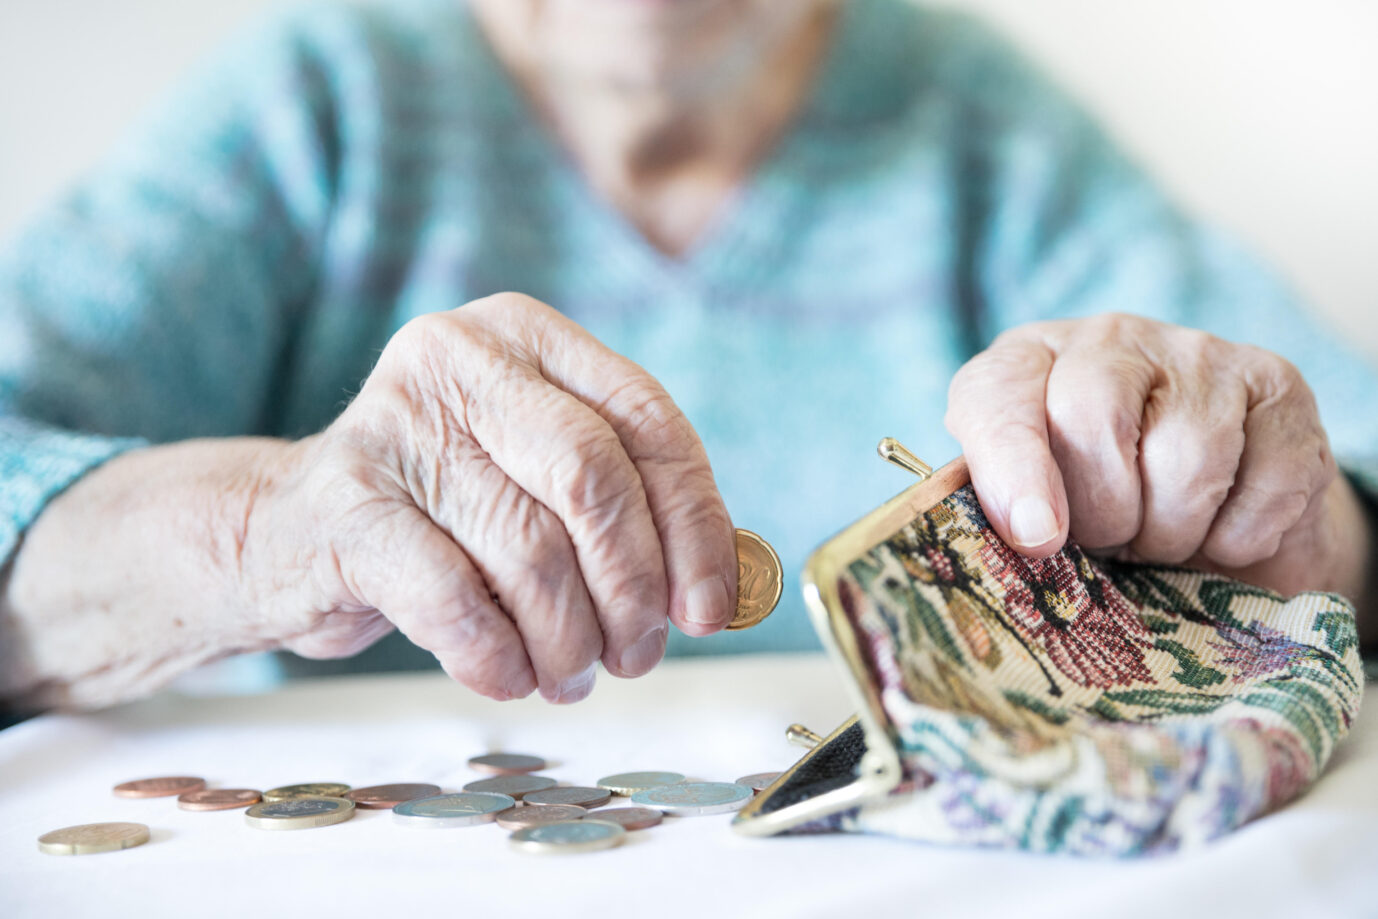 Die Durchschnittsrente nach 45 Versicherungsjahren beträgt in Deutschland 1.600 Euro. Rund 20 Prozent der Rentner erhält weniger als 1.200 Euro im Monat, teilte die Bundesregierung mit.